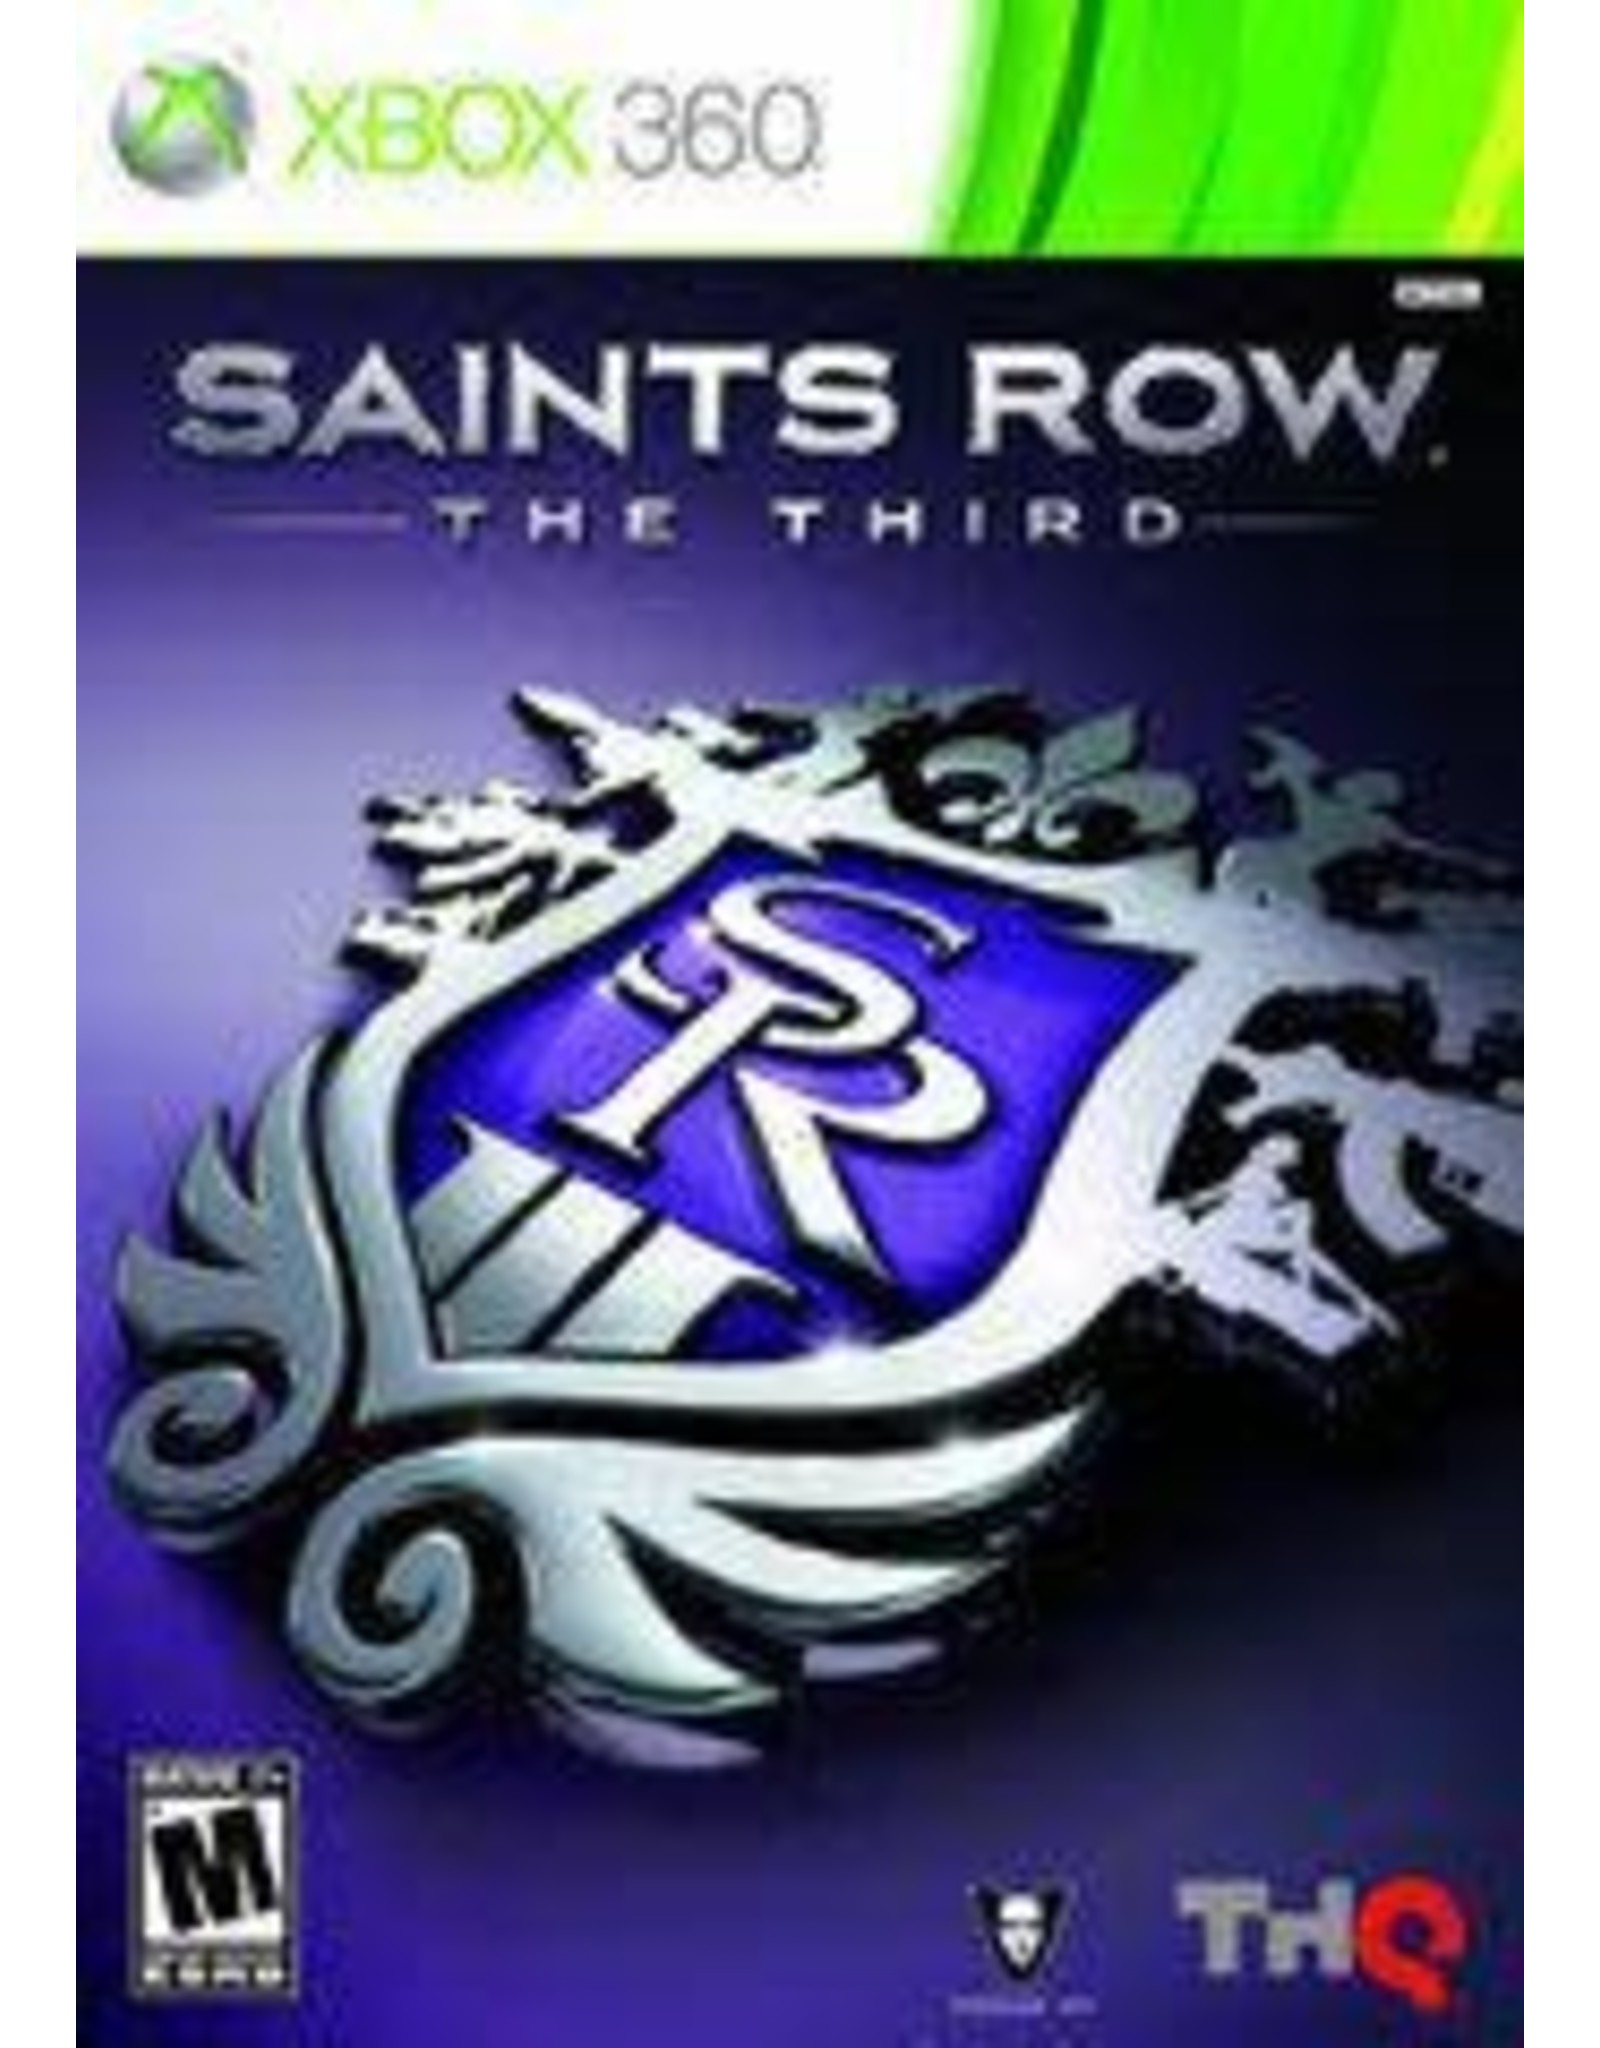 Xbox 360 Saints Row: The Third (CiB)